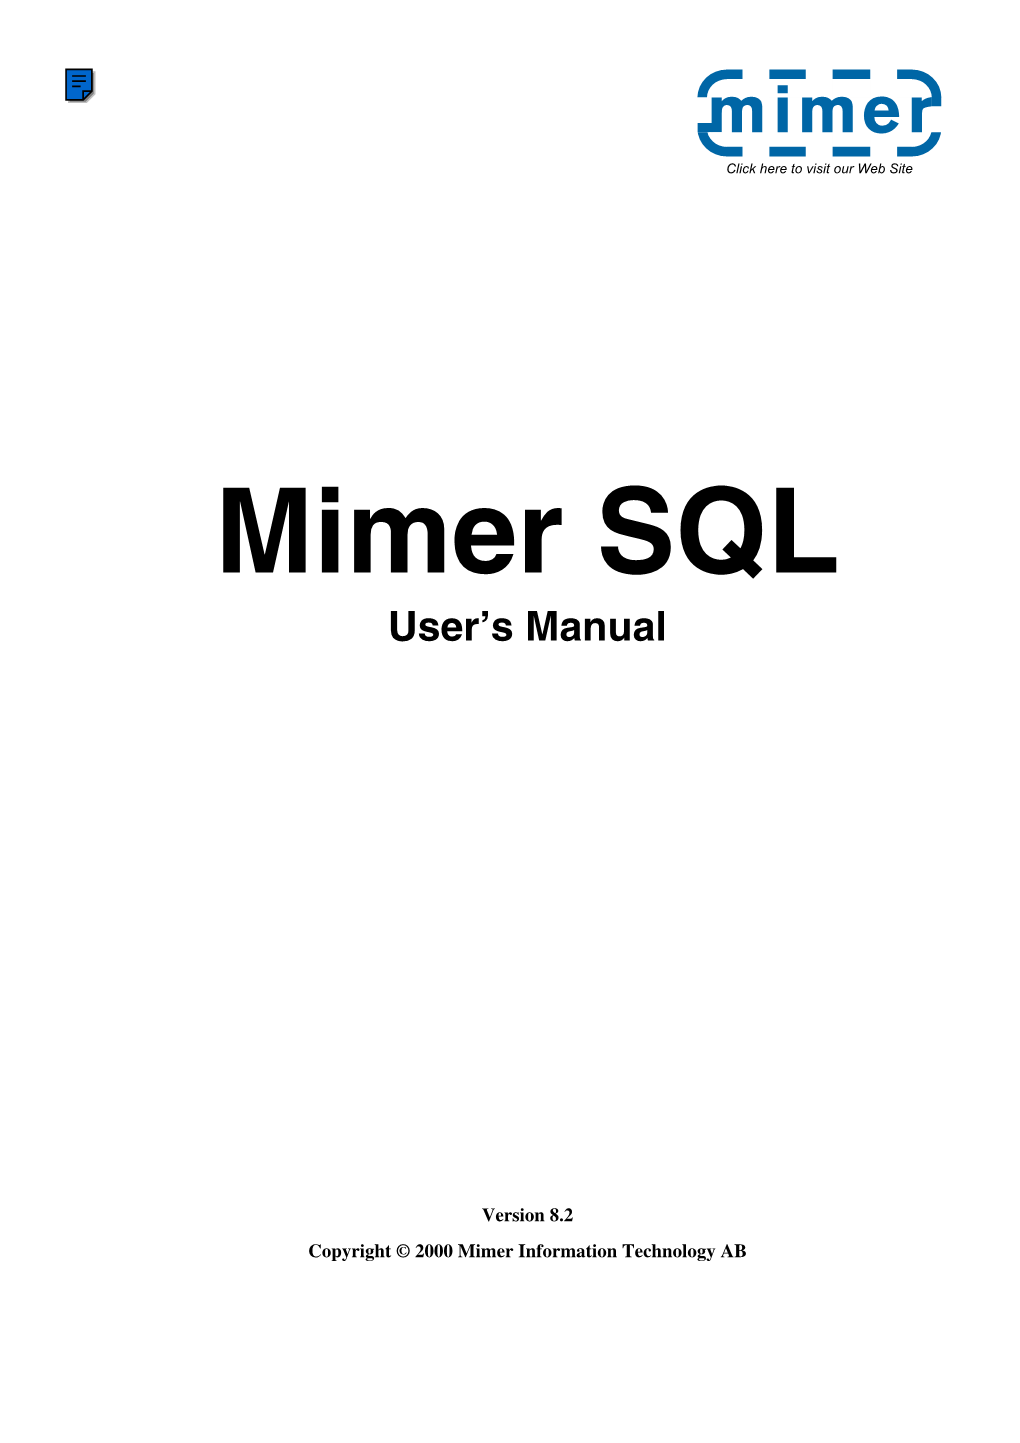 Mimer SQL User's Manual